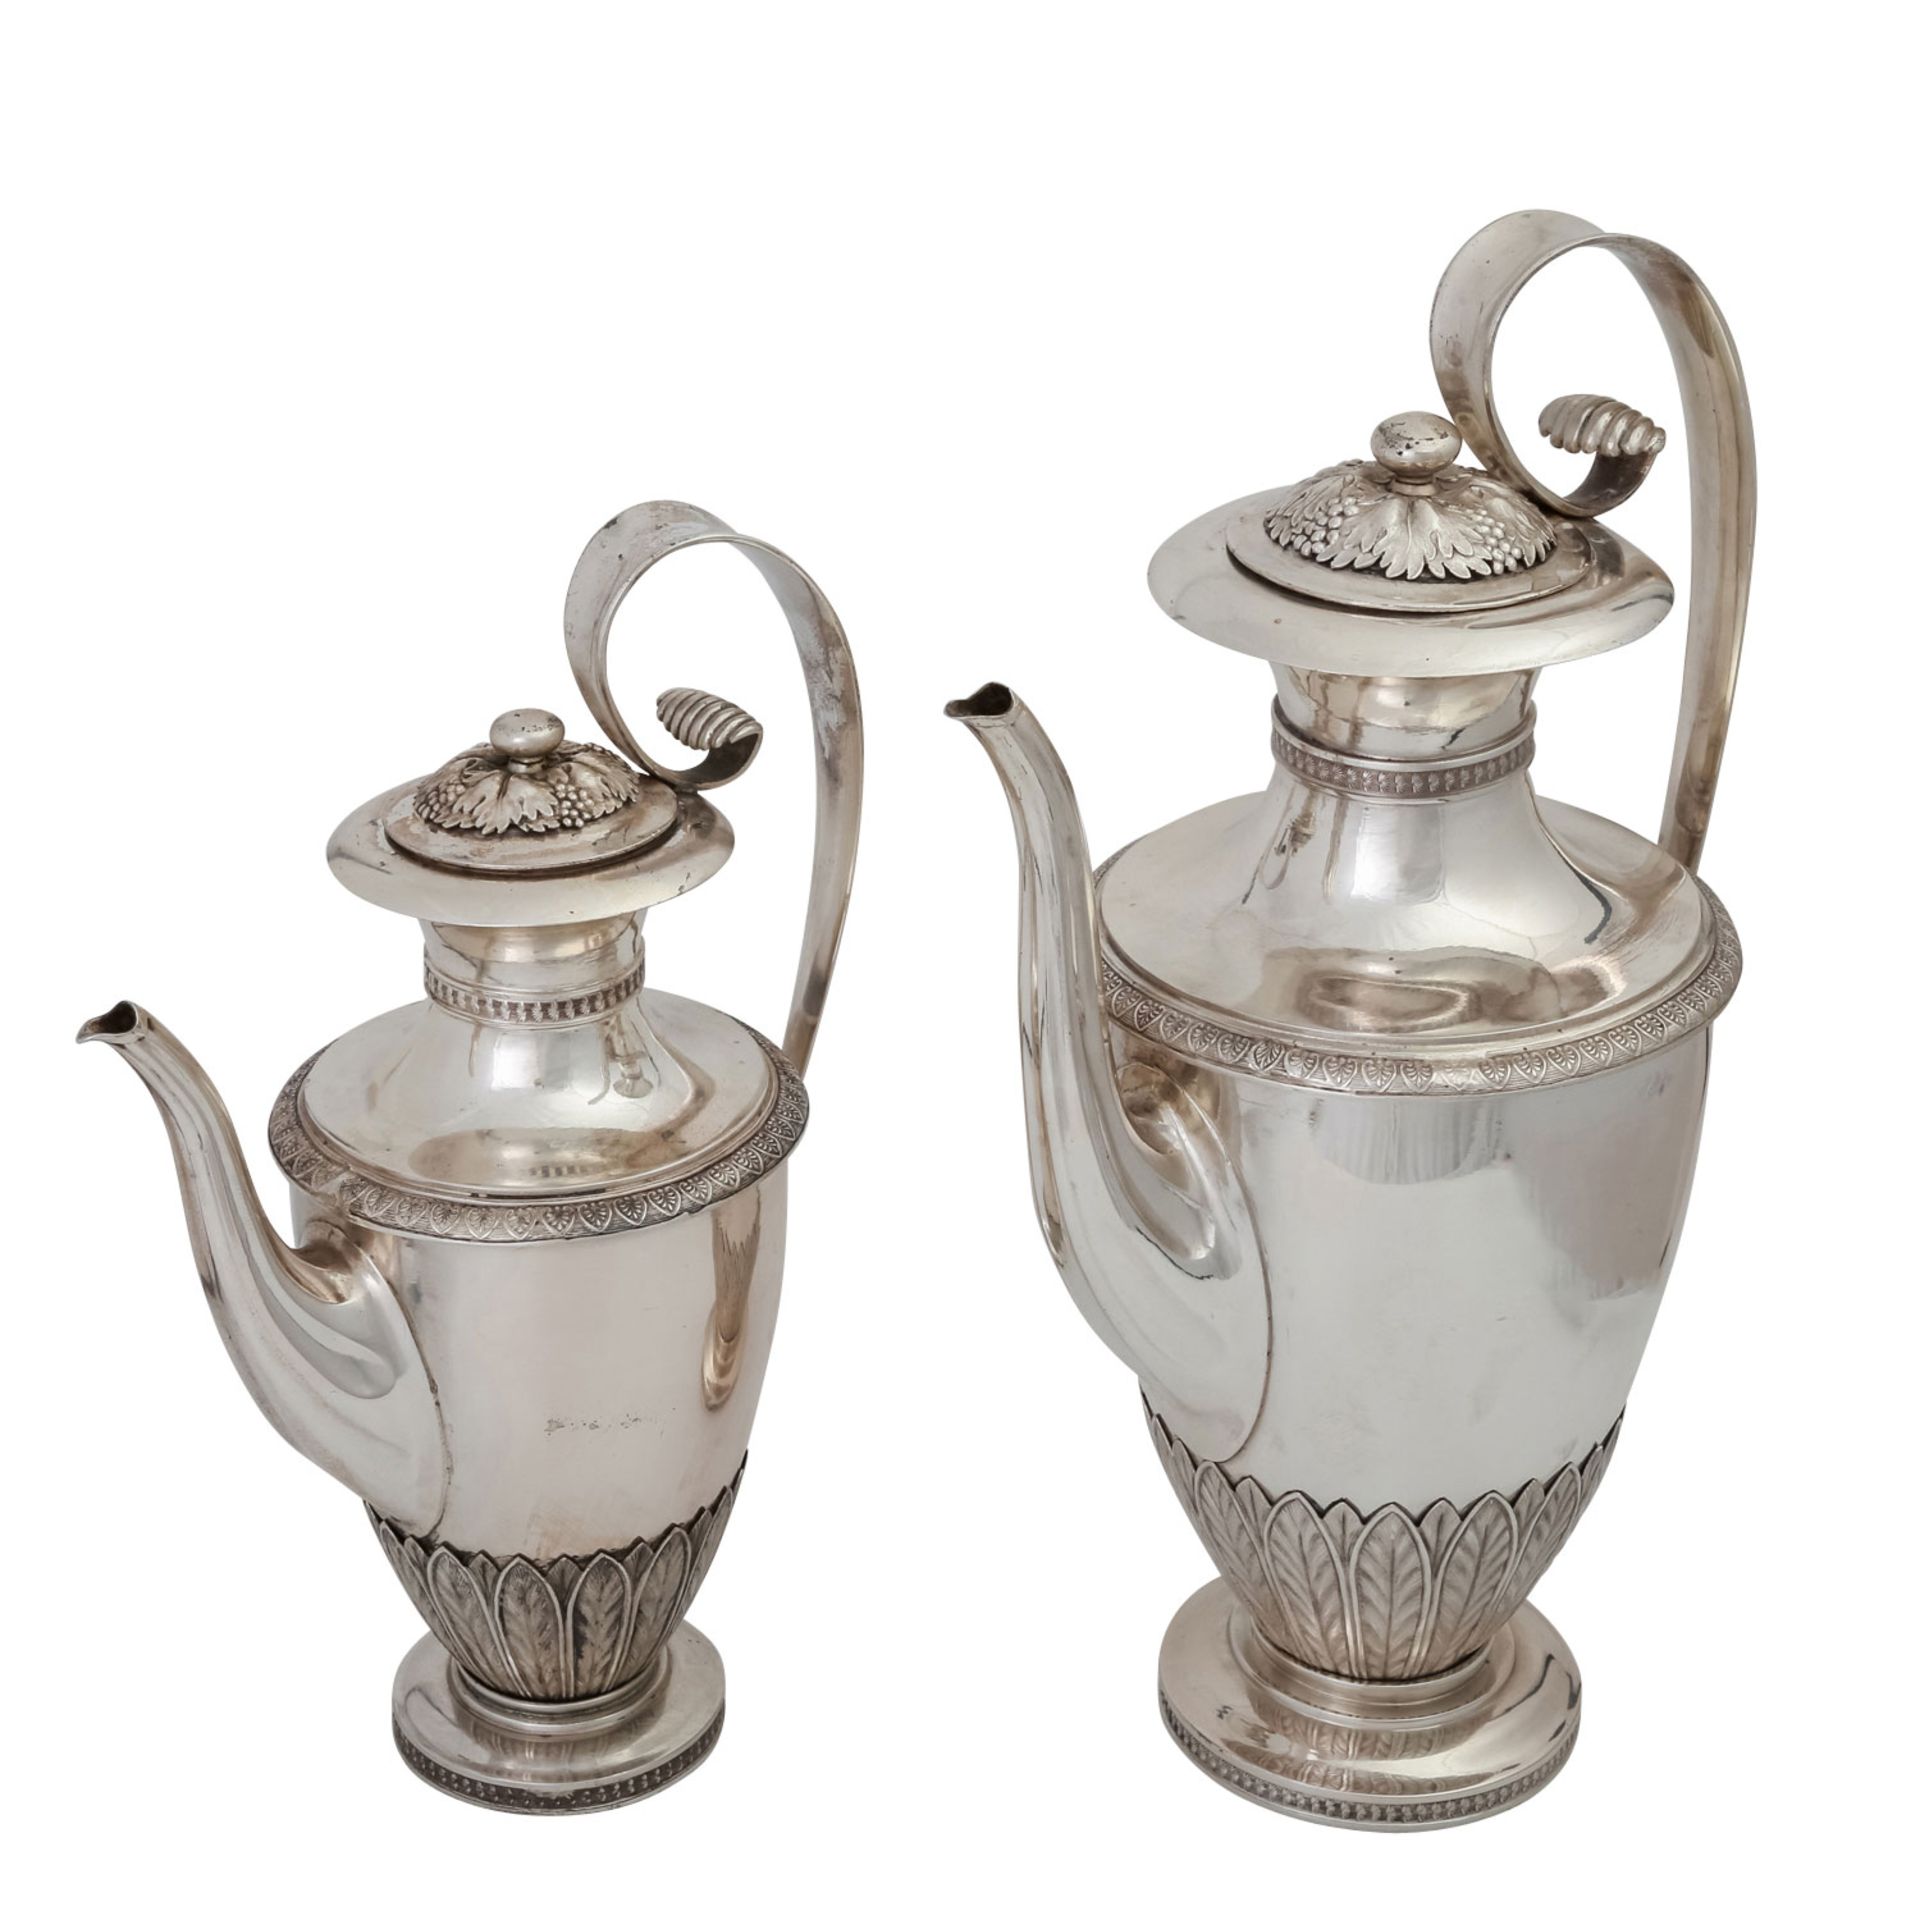 STUTTGART Kaffeekanne und Mokkakanne, Silber, um 1800.Ovoider Korpus auf rundem, profiliertem Stand,